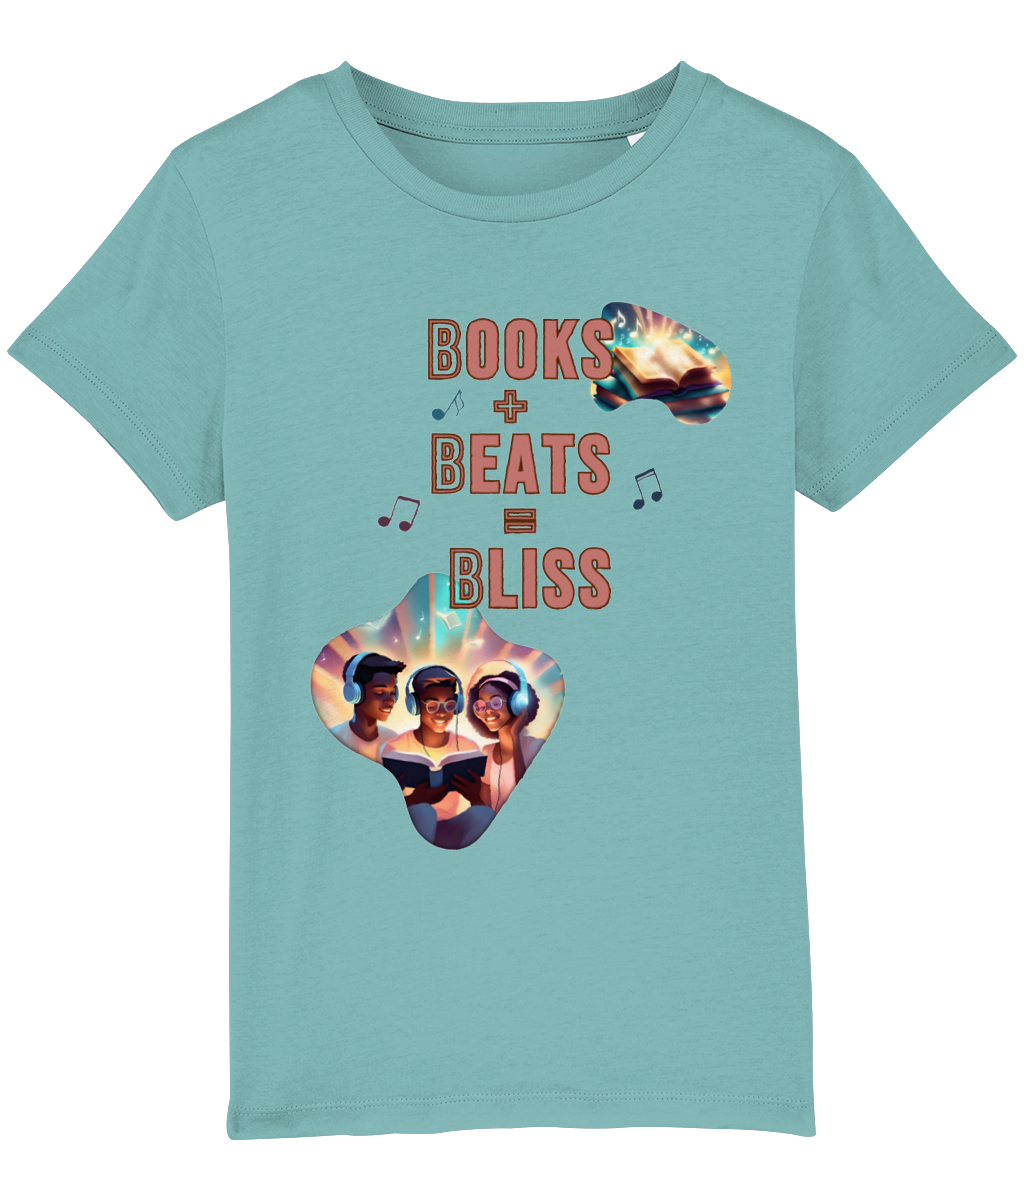 Organic Cotton Kids T-Shirt - Book+Beats=Bliss